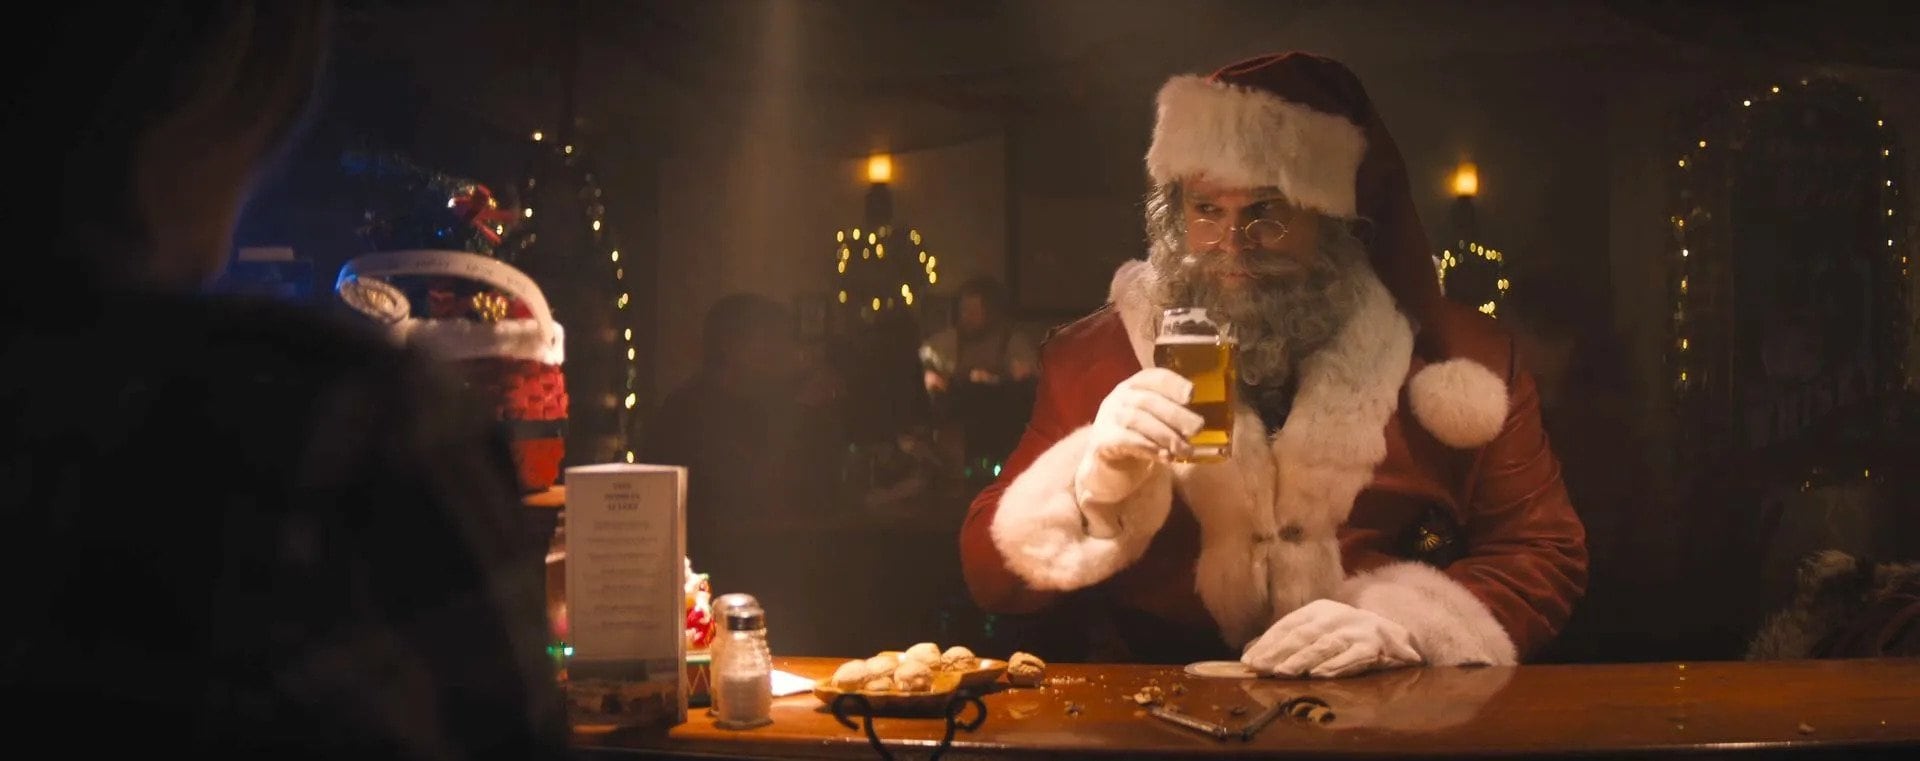 Santa je pijan